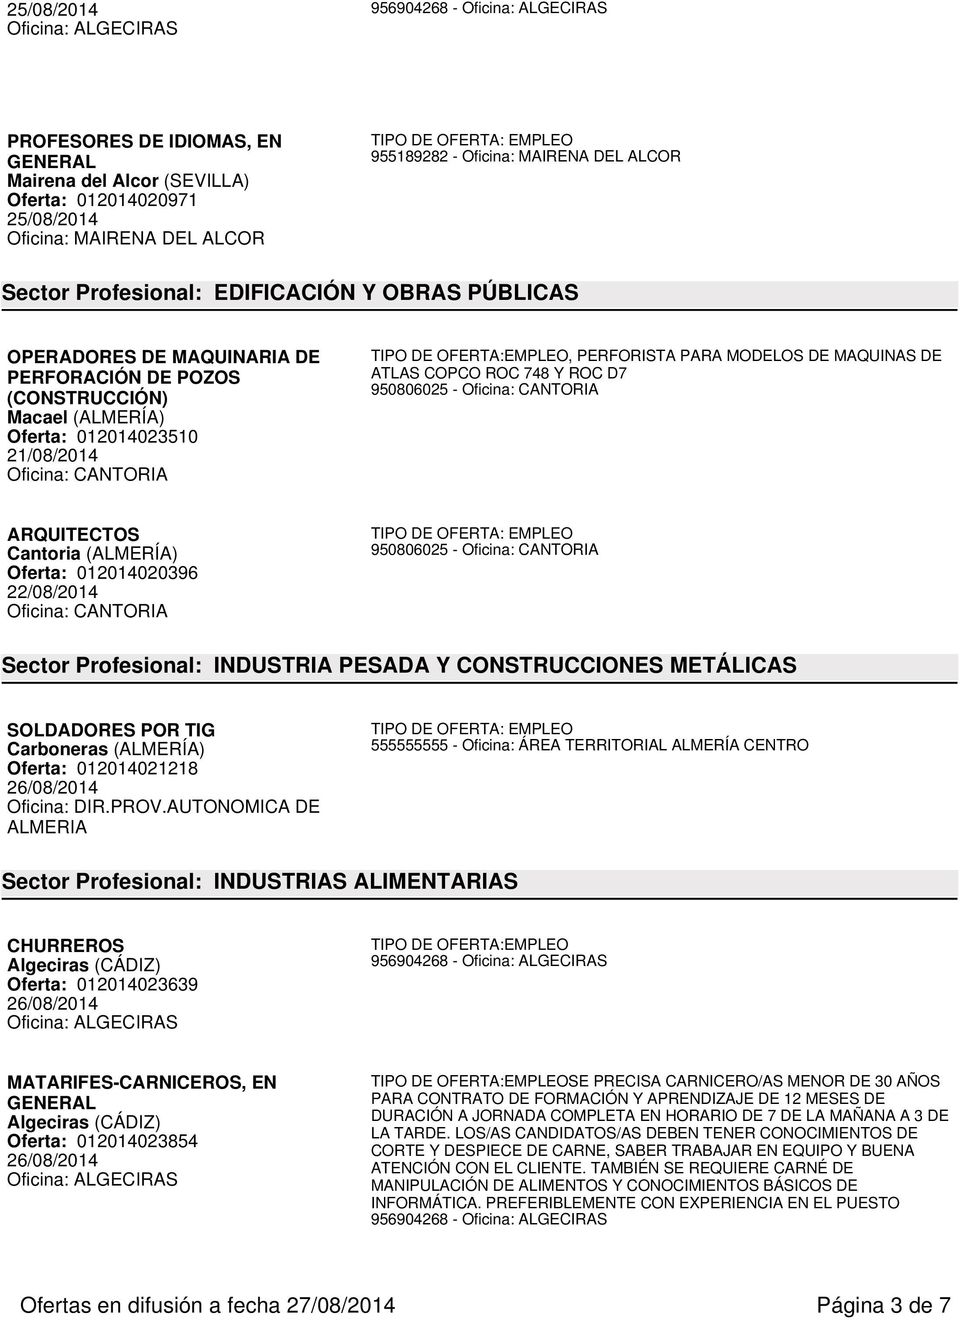 MODELOS DE MAQUINAS DE ATLAS COPCO ROC 748 Y ROC D7 ARQUITECTOS Oferta: 012014020396 Sector Profesional: INDUSTRIA PESADA Y CONSTRUCCIONES METÁLICAS SOLDADORES POR TIG Carboneras (ALMERÍA) Oferta: